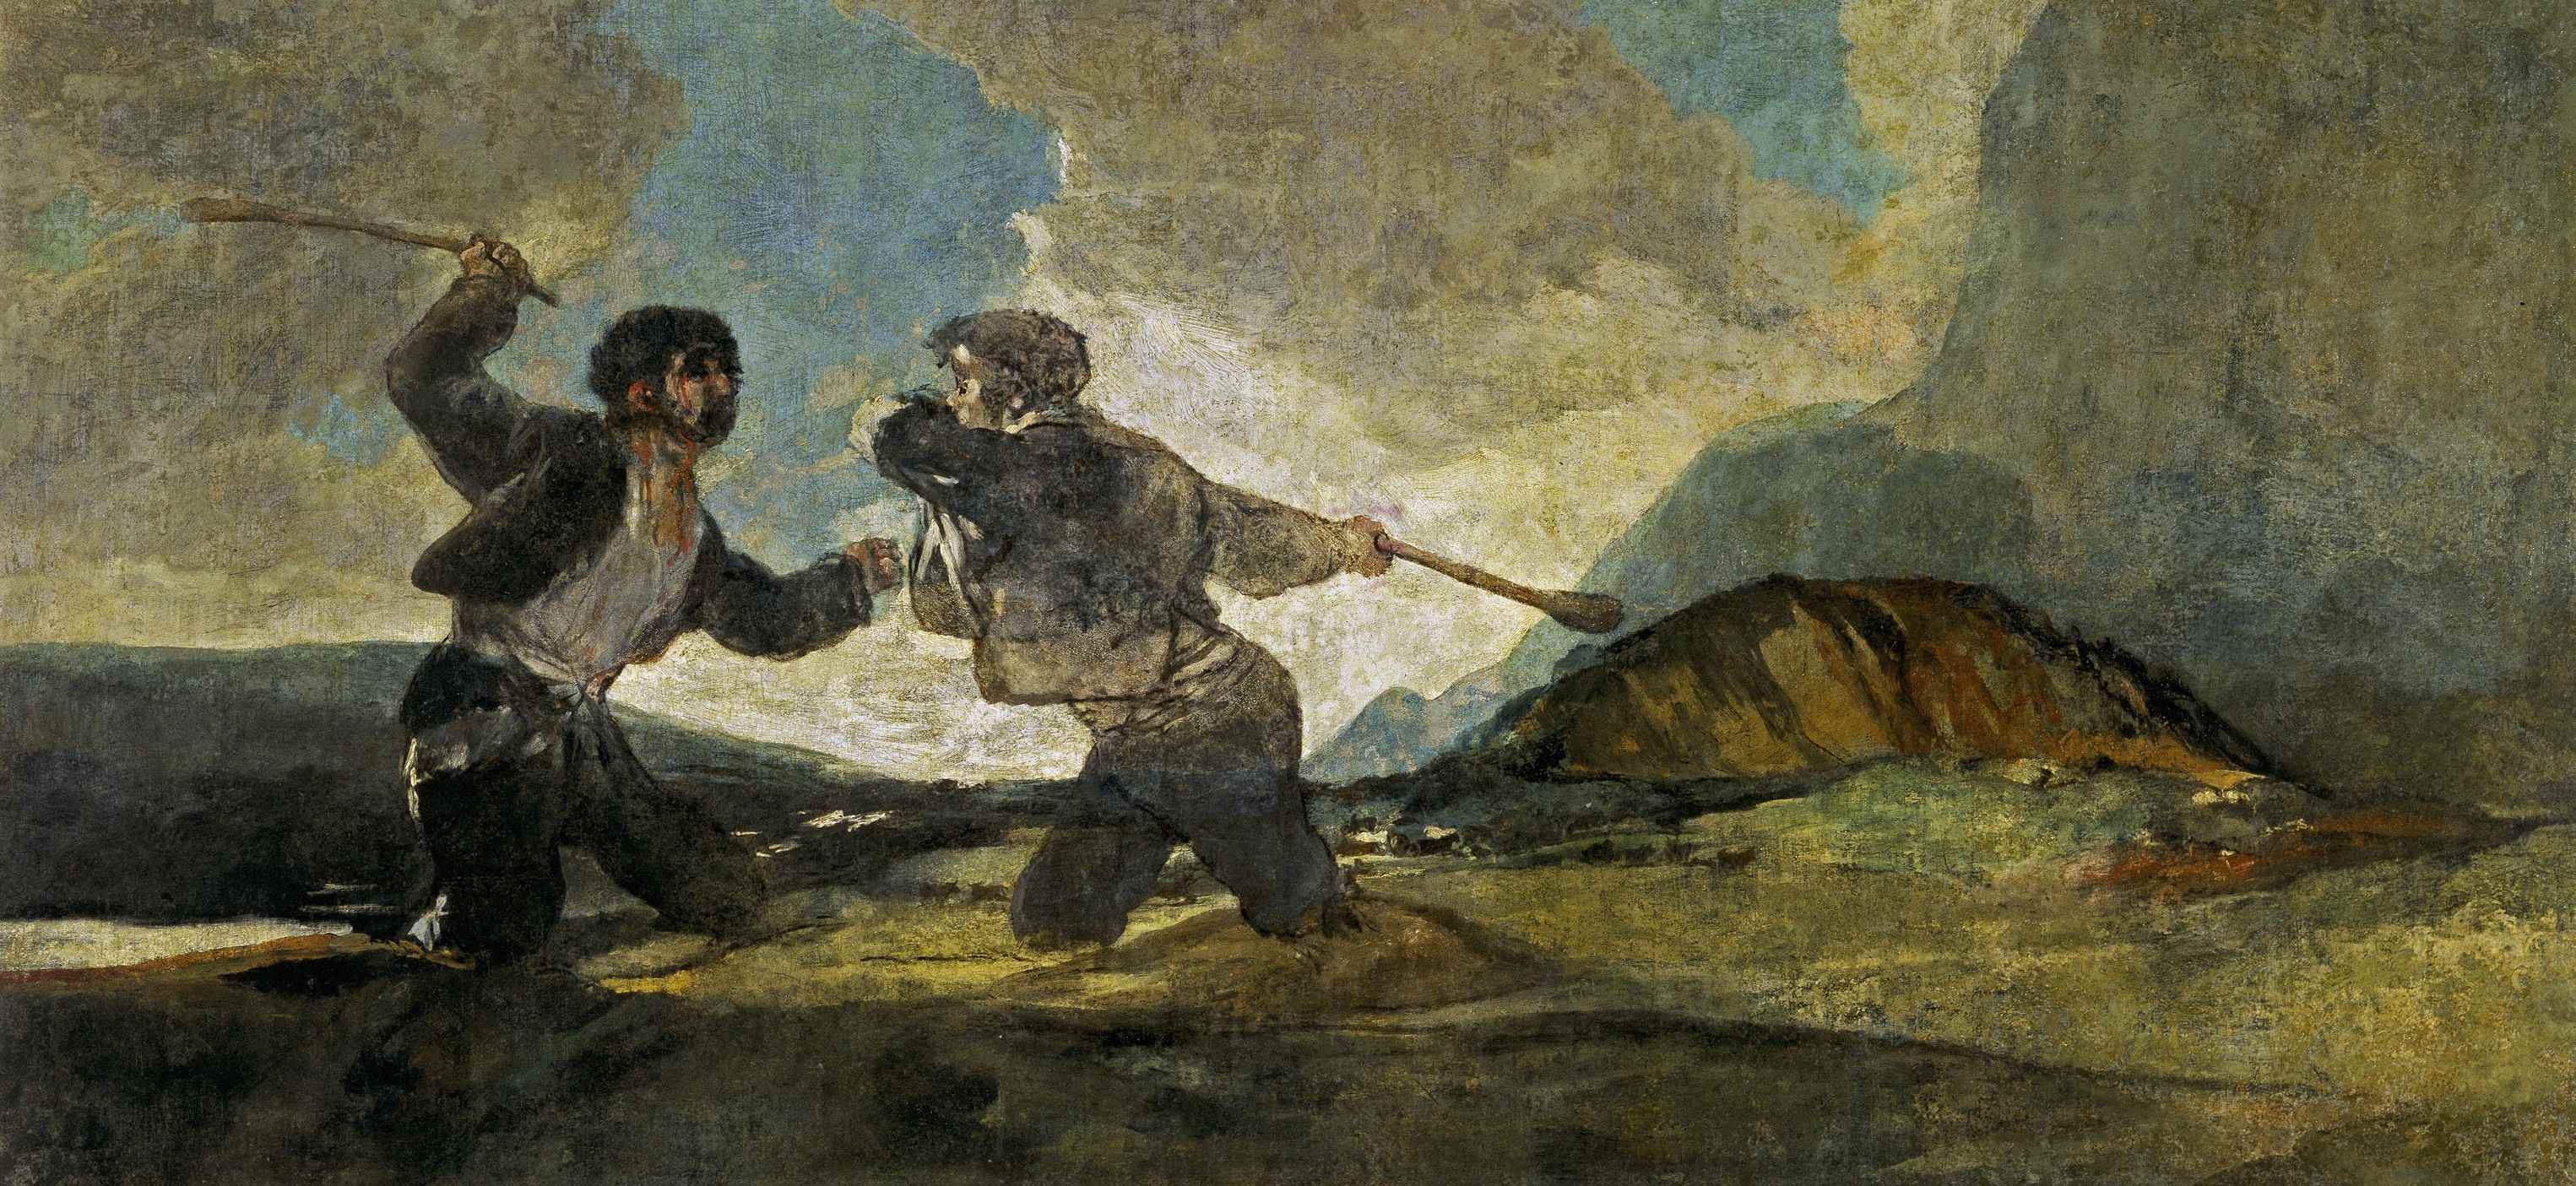 Francisco de Goya y Lucientes Duelo en garrotazos